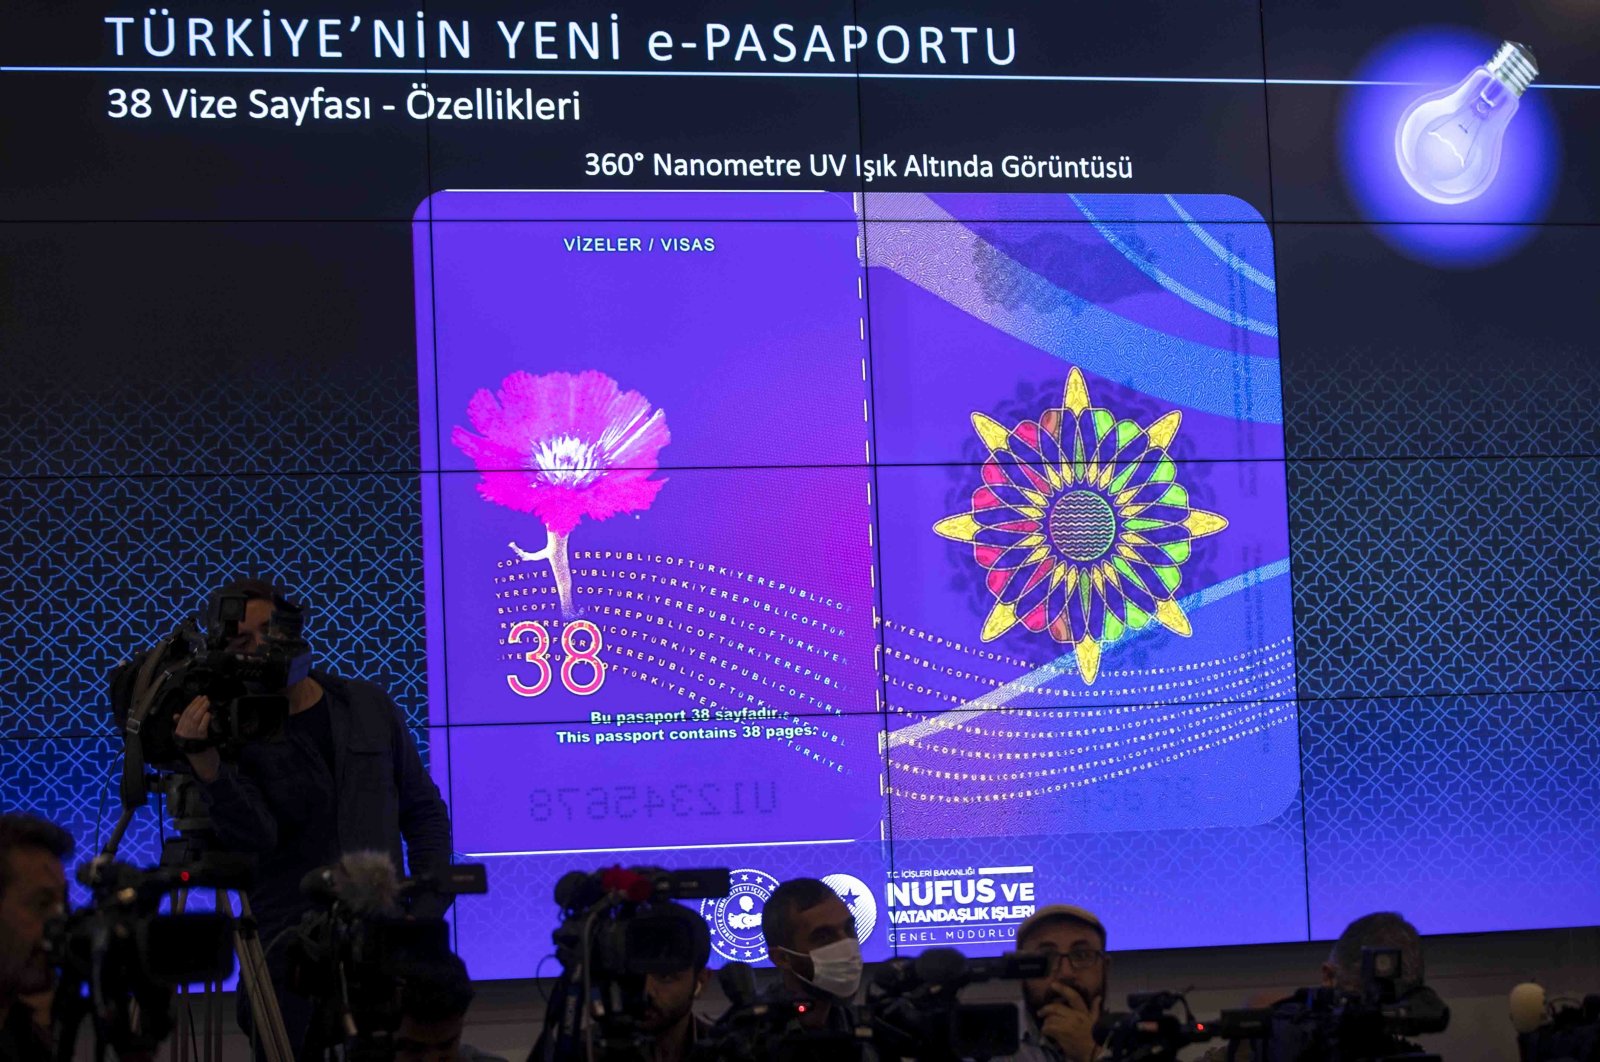 Turki luncurkan paspor baru buatan lokal yang dimodernisasi